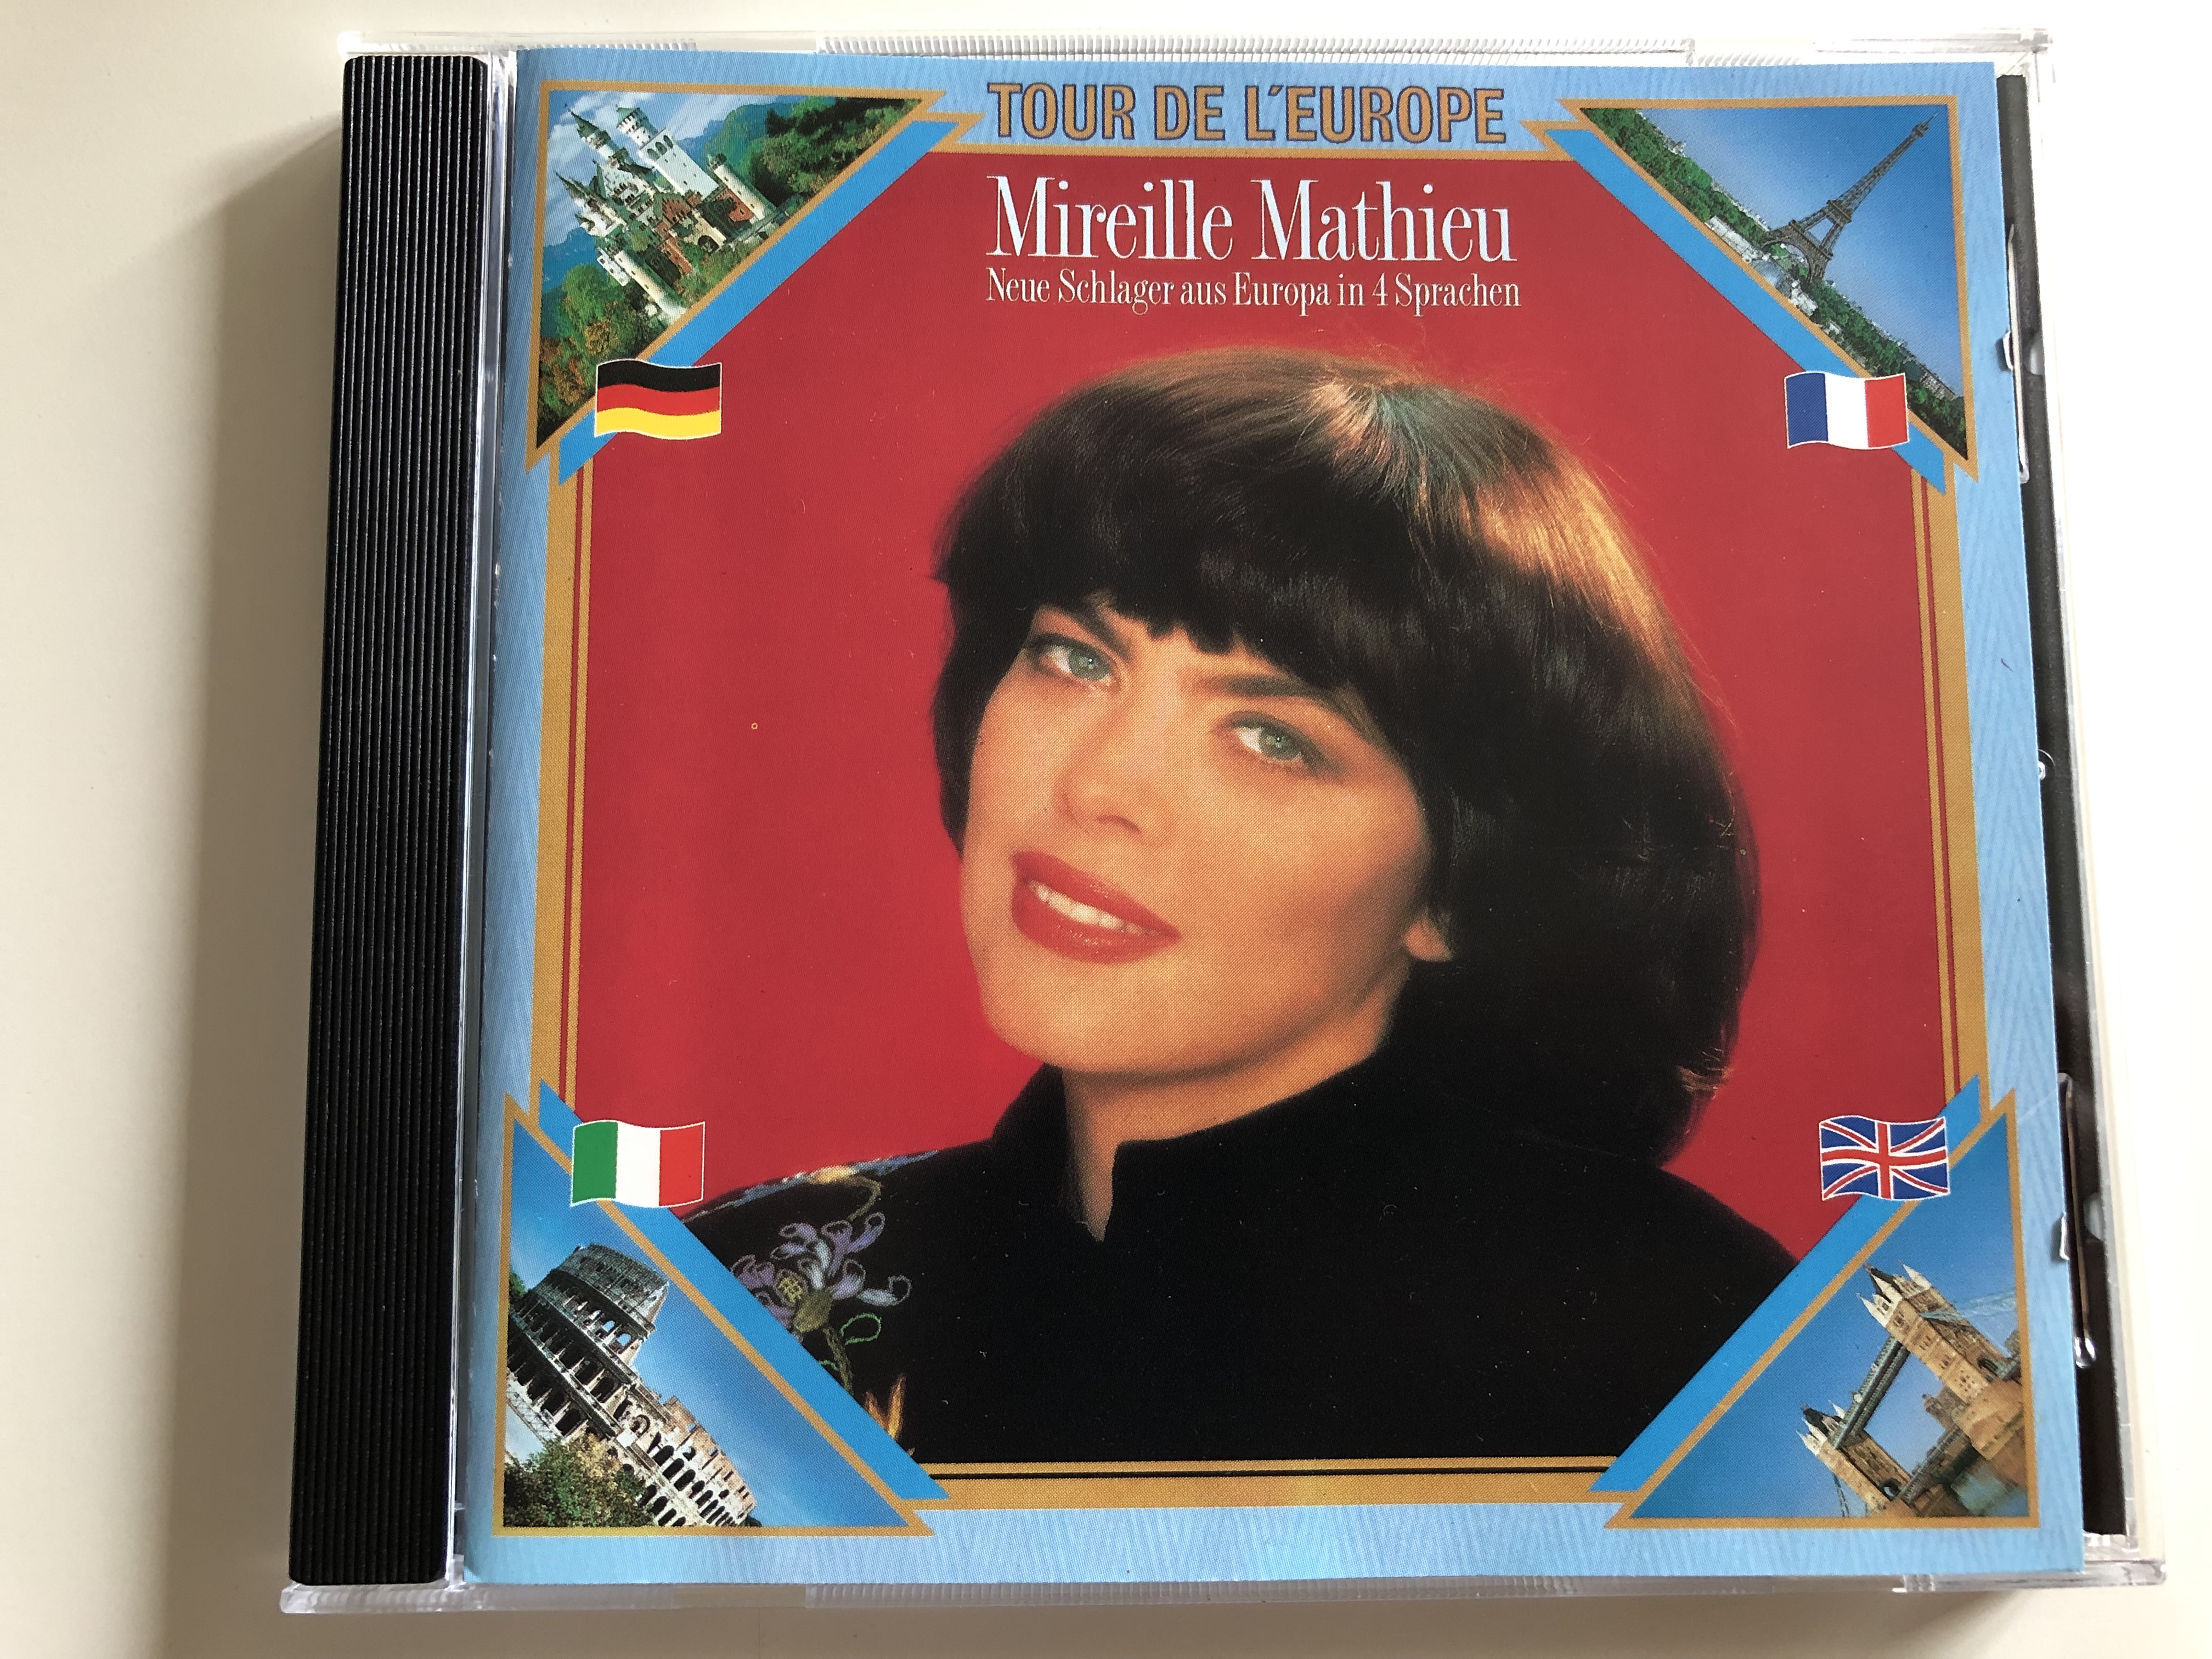 mireille-mathieu-neue-schlager-aus-europa-in-4-sprachen-tour-de-l-europe-audio-cd-1991-ariola-bmg-258-743-217-1-.jpg